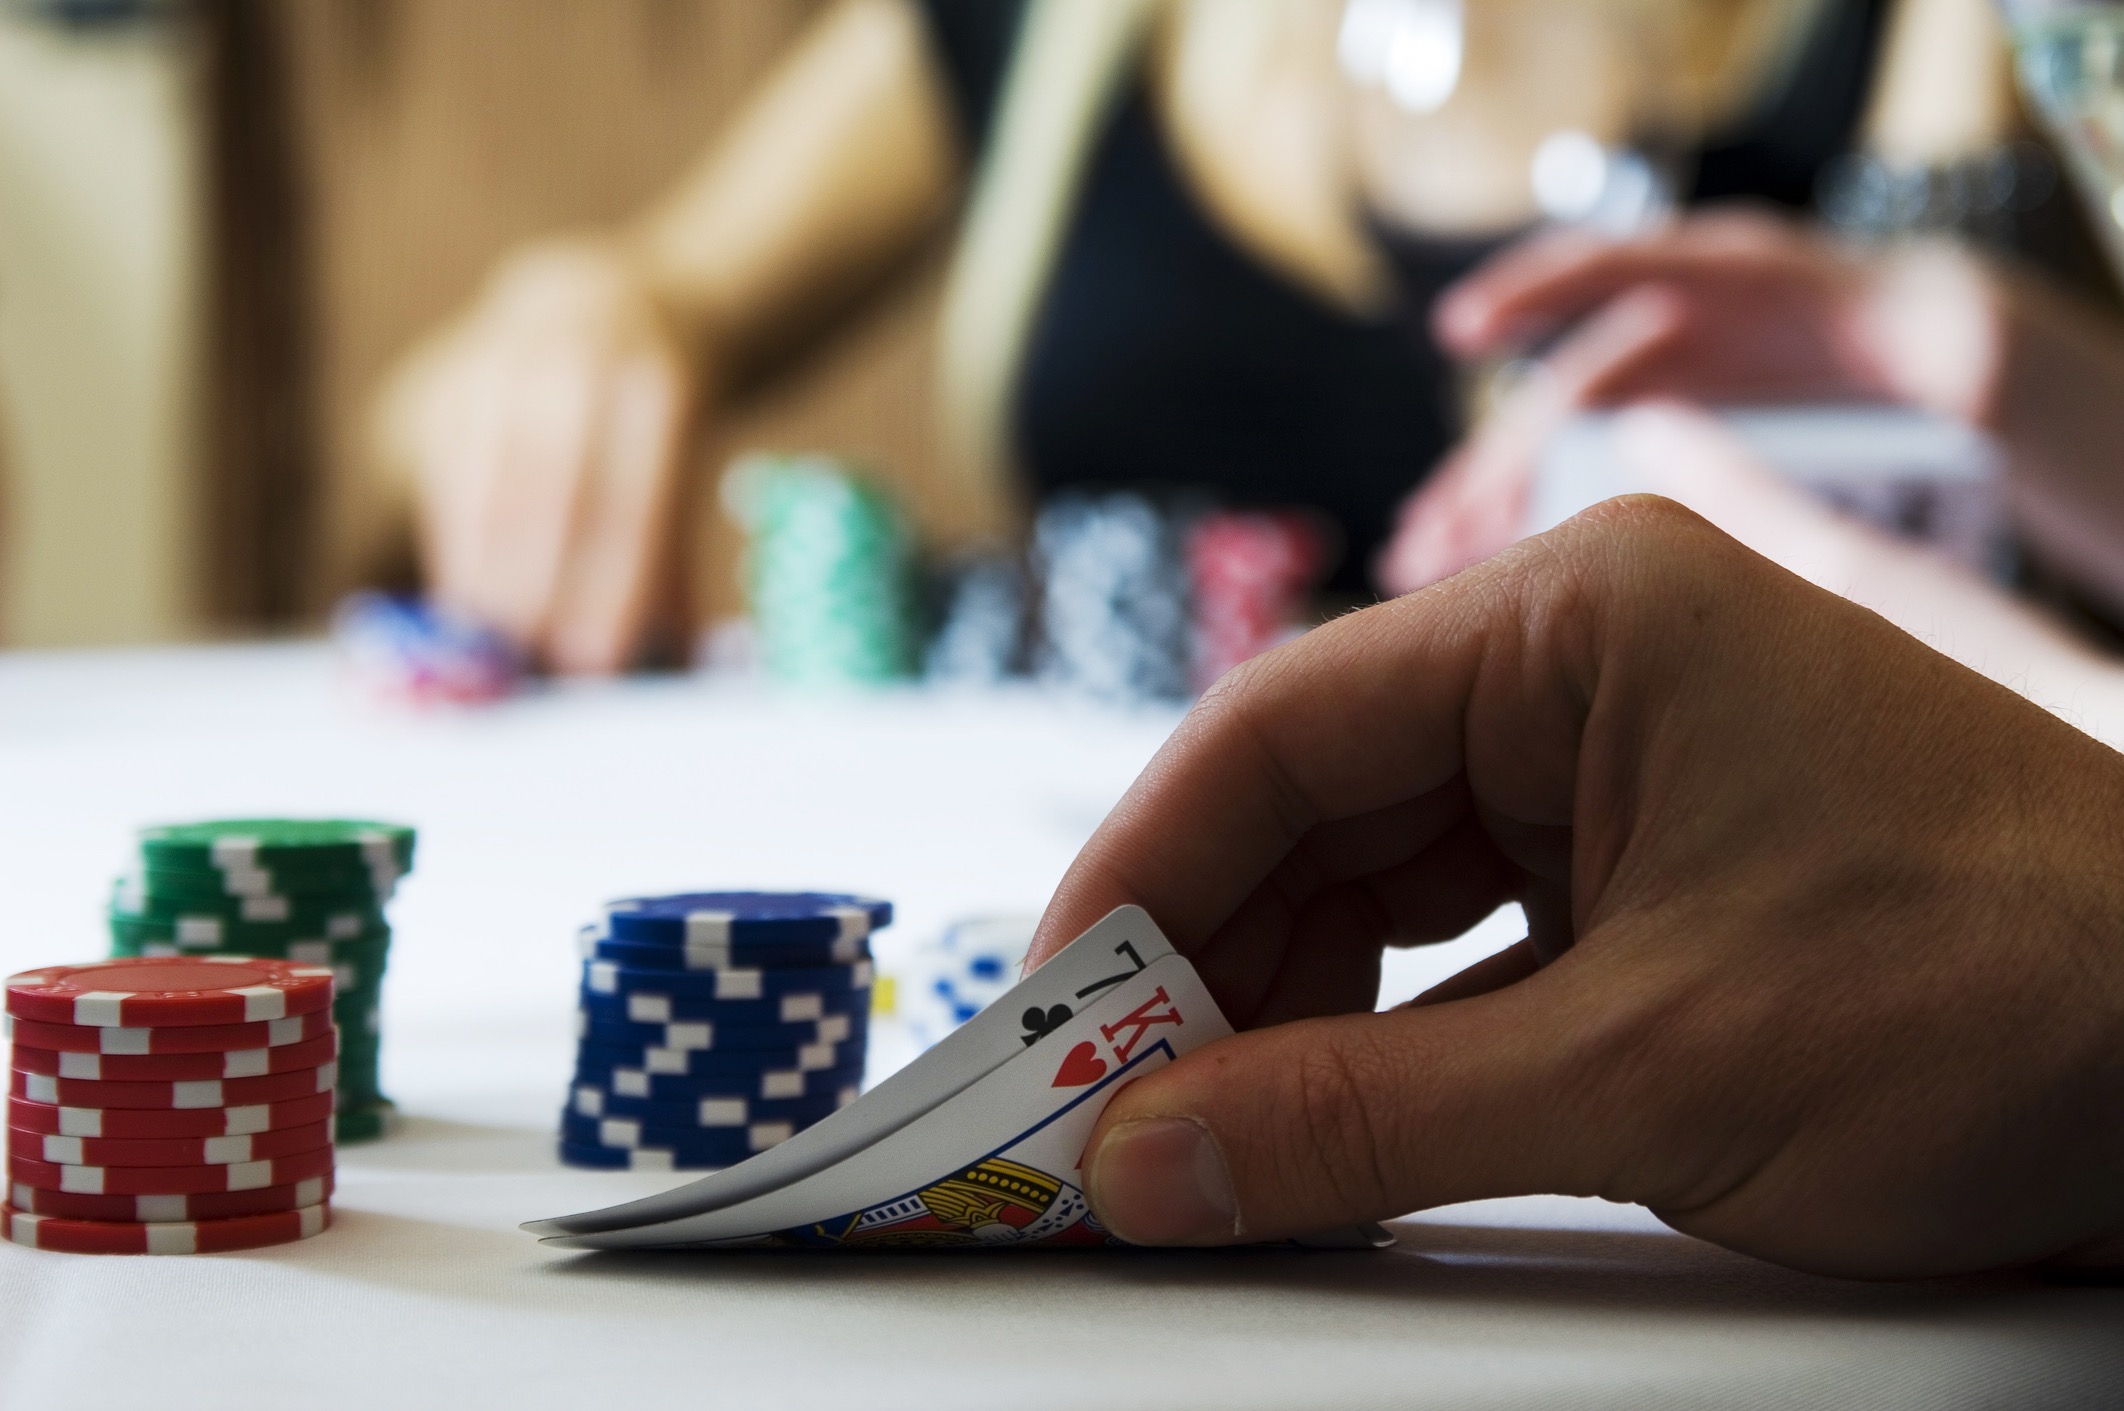 Miten pokerin pelaaminen kannattaa aloittaa?